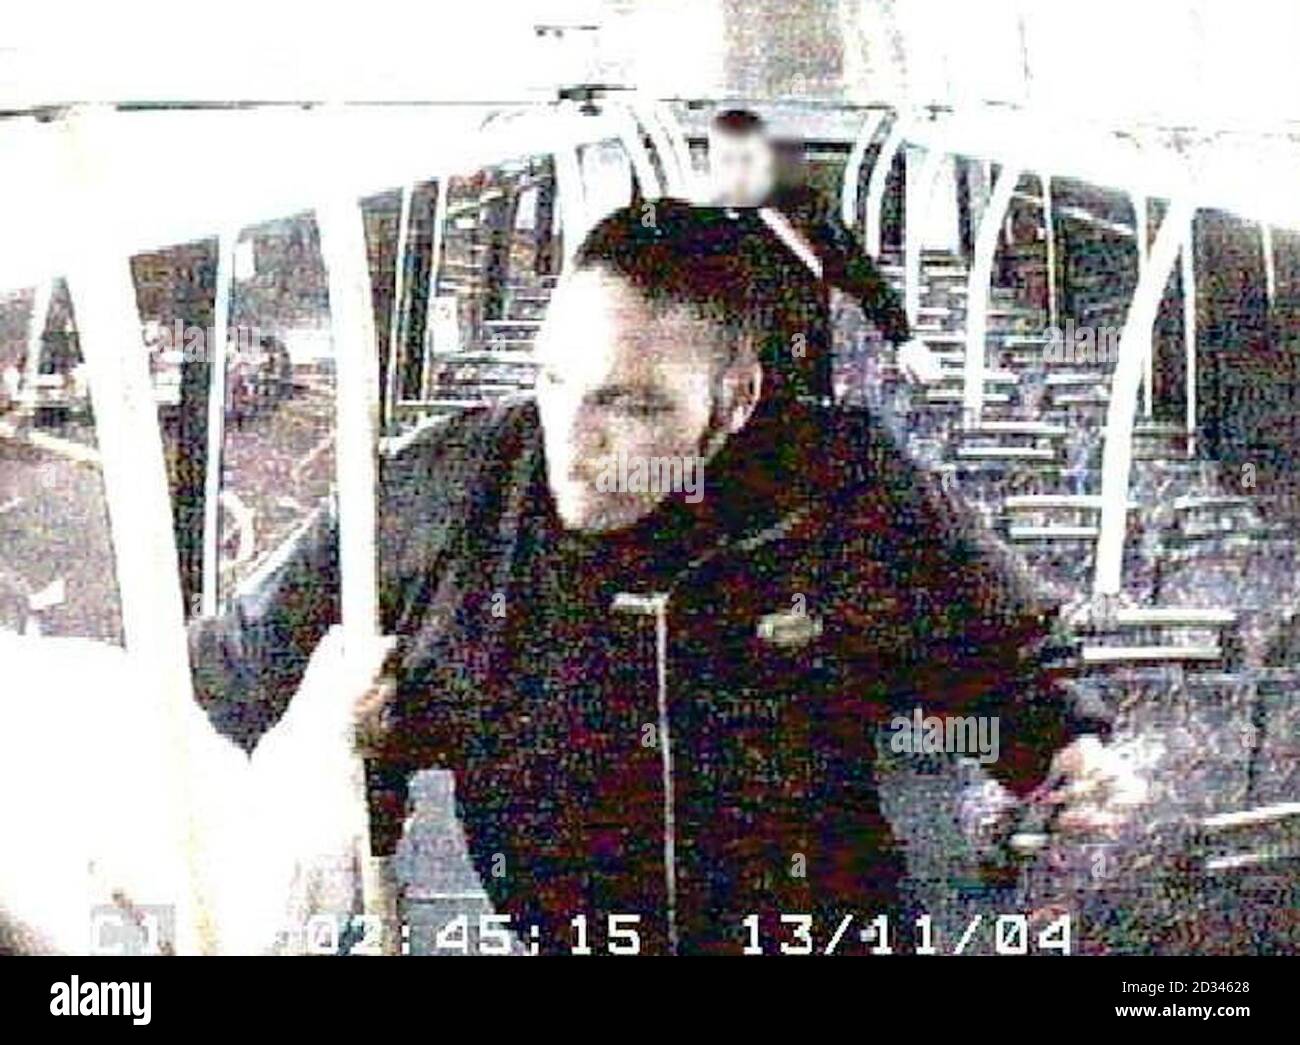 La police de Métroplitan a publié des images de vidéosurveillance faisant appel à des témoins et à des informations à la suite d'un incident dans lequel un homme blanc de la fin de la vingtaine avait vaporisé de l'essence sur son visage et a été mis à feu dans un bus par un homme noir à la fin de son adolescence.l'incident s'est produit vers 02:30 le samedi 13/11/04 Sur le bus N16 de Victoria à Edgware, comme il passait par High Street, Edgware. CCTV obtenu de l'autobus montre qu'il y a eu une perturbation entre trois ou quatre mâles blancs à l'étage sur l'autobus. Un homme noir de son adolescence, qui dormait sur le siège arrière du pont supérieur du bus, était réveillé Banque D'Images